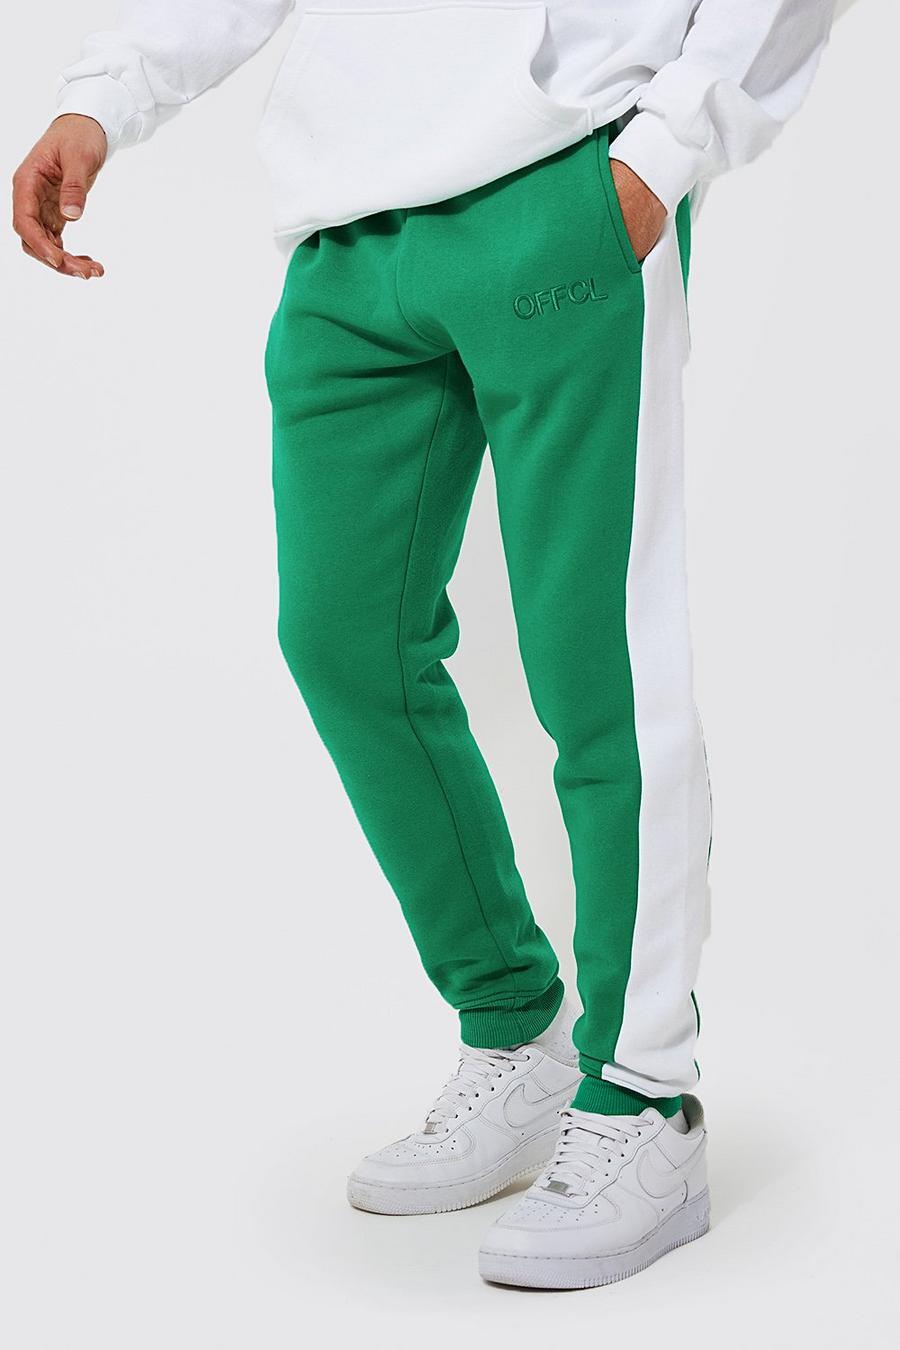 Green grön Offcl Joggers i skinny fit med blockfärger